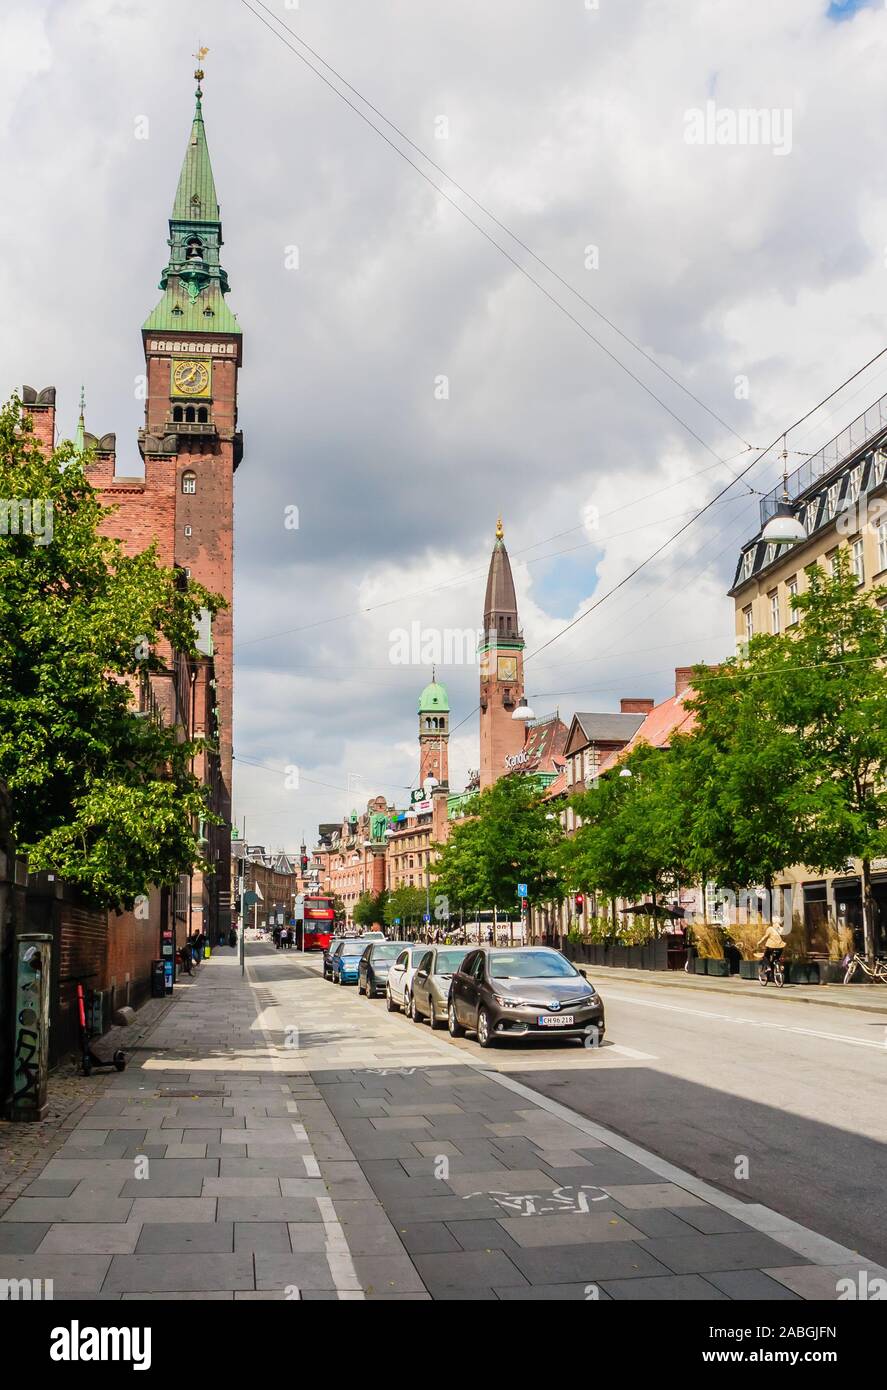 Street view of Vester Voldgade in Copenhagen, Denmark Stock Photo